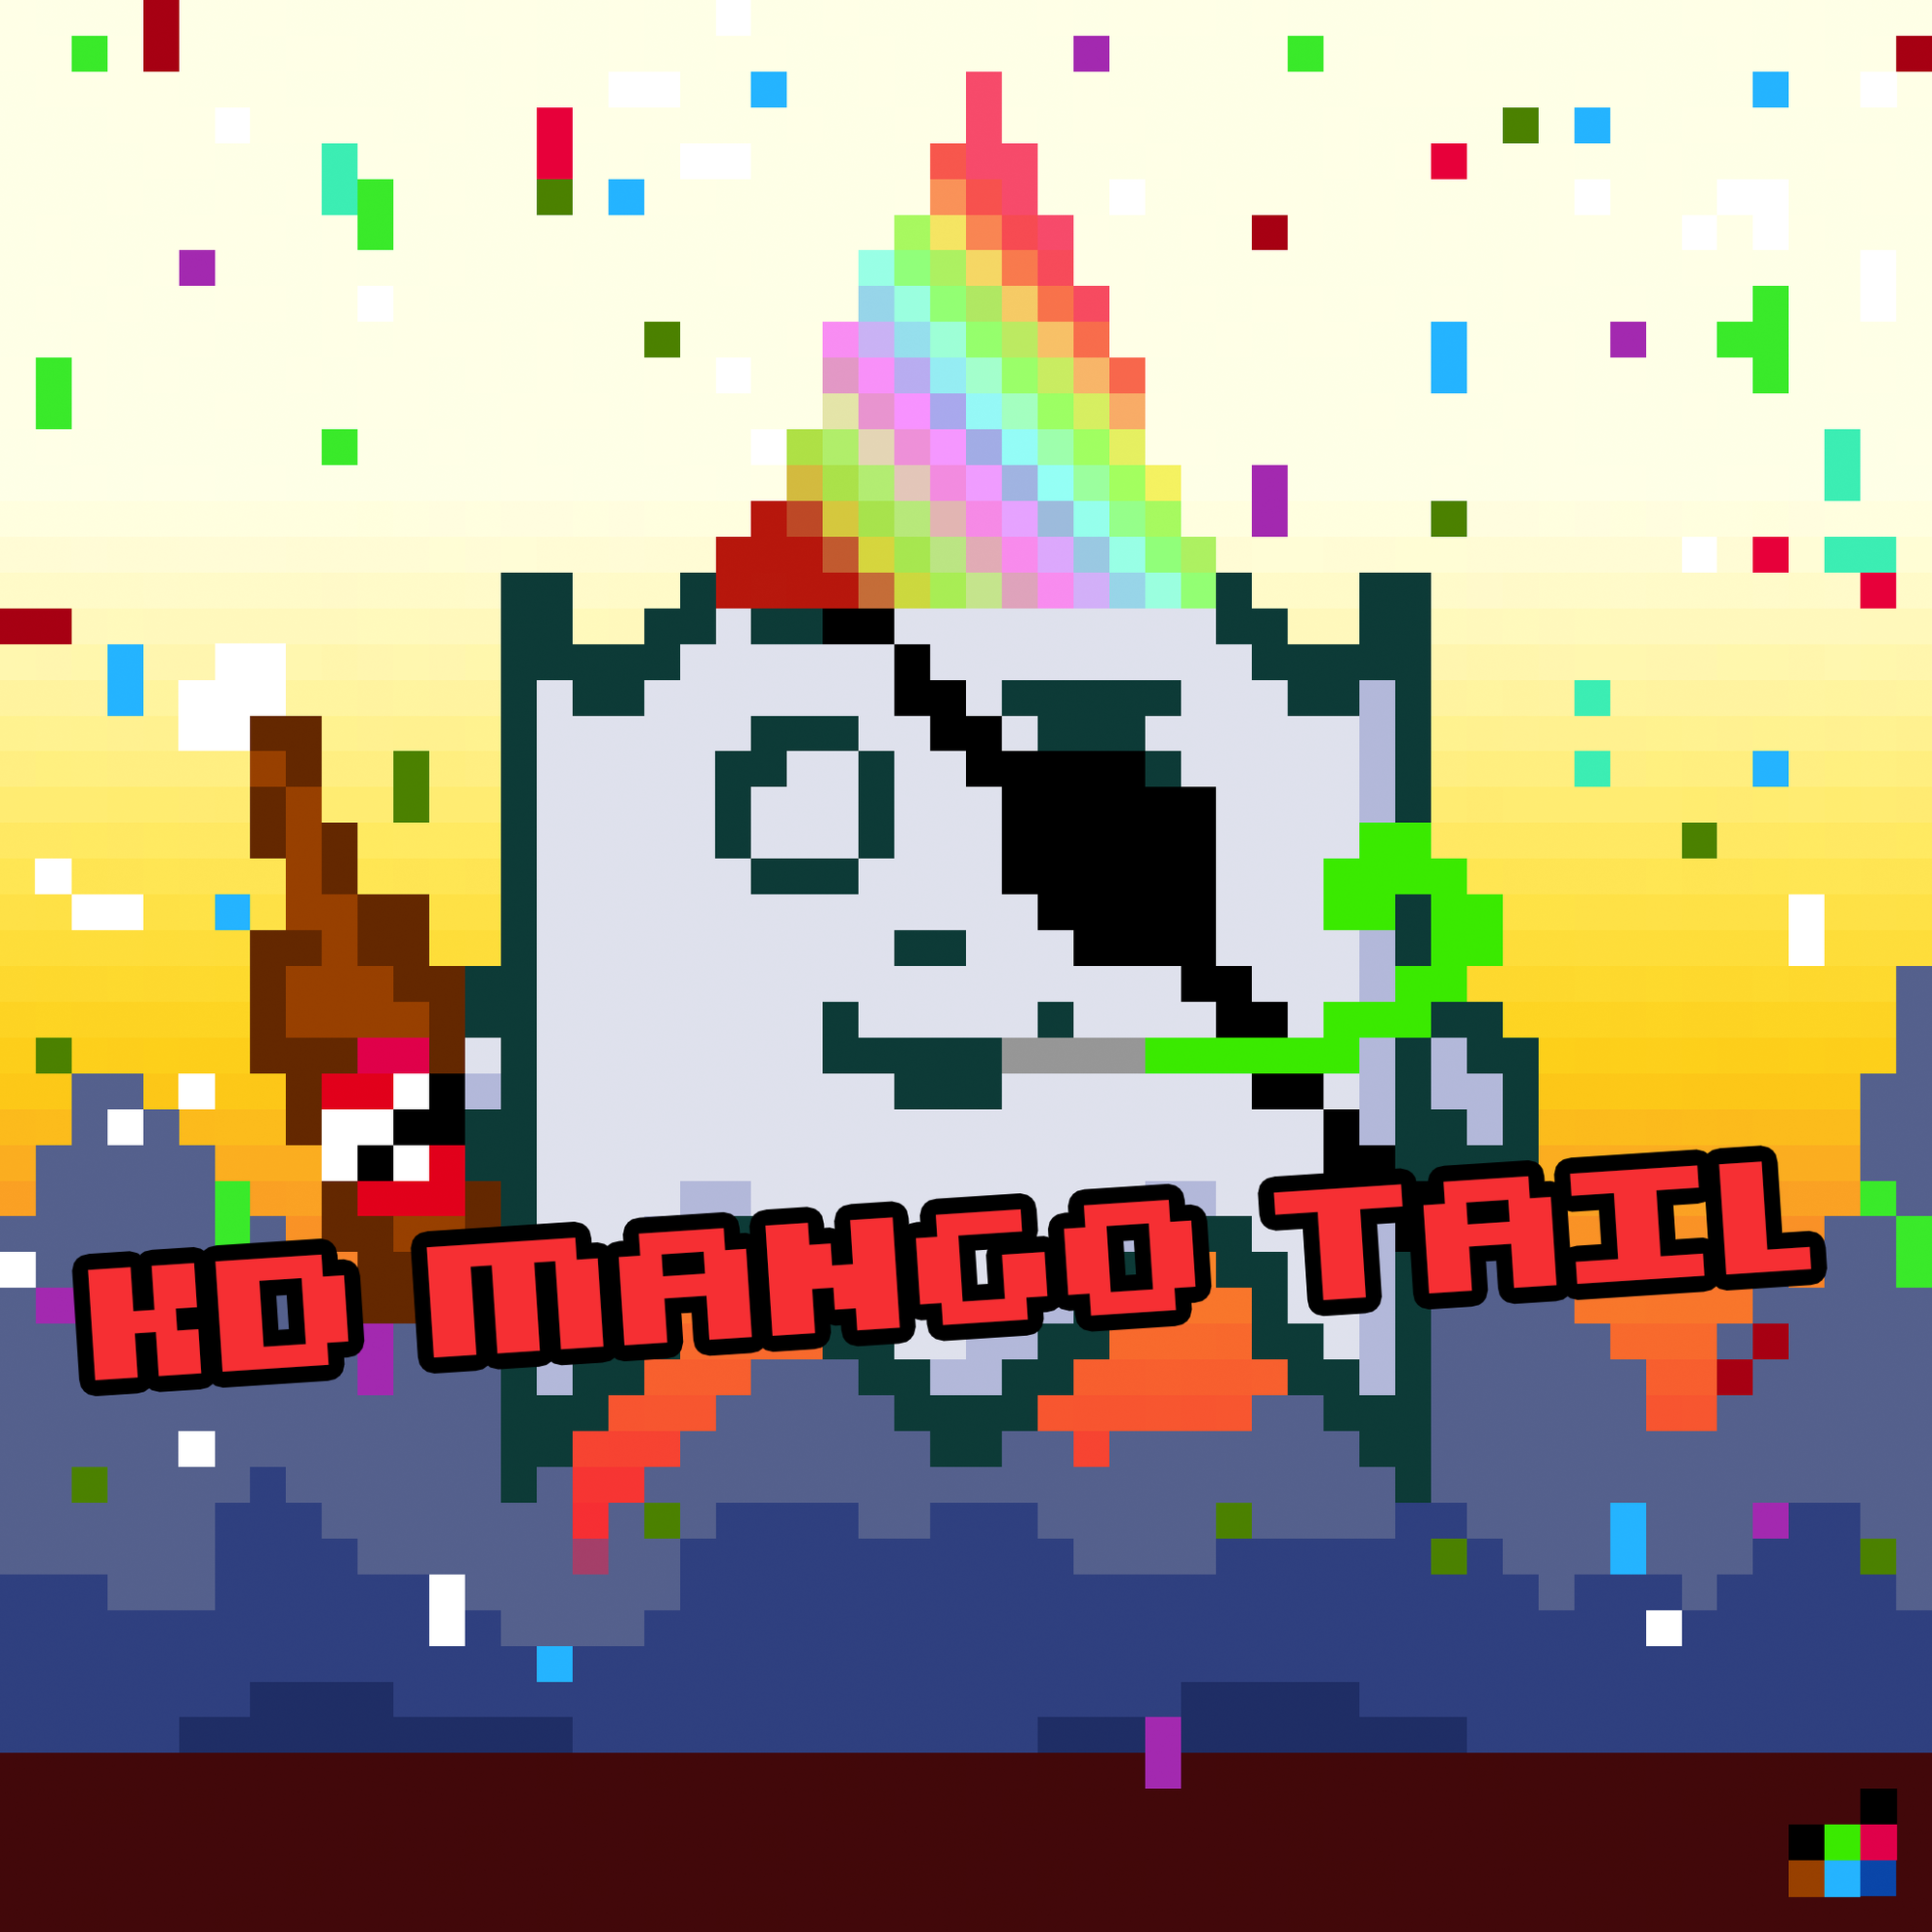 KD Mango Tail